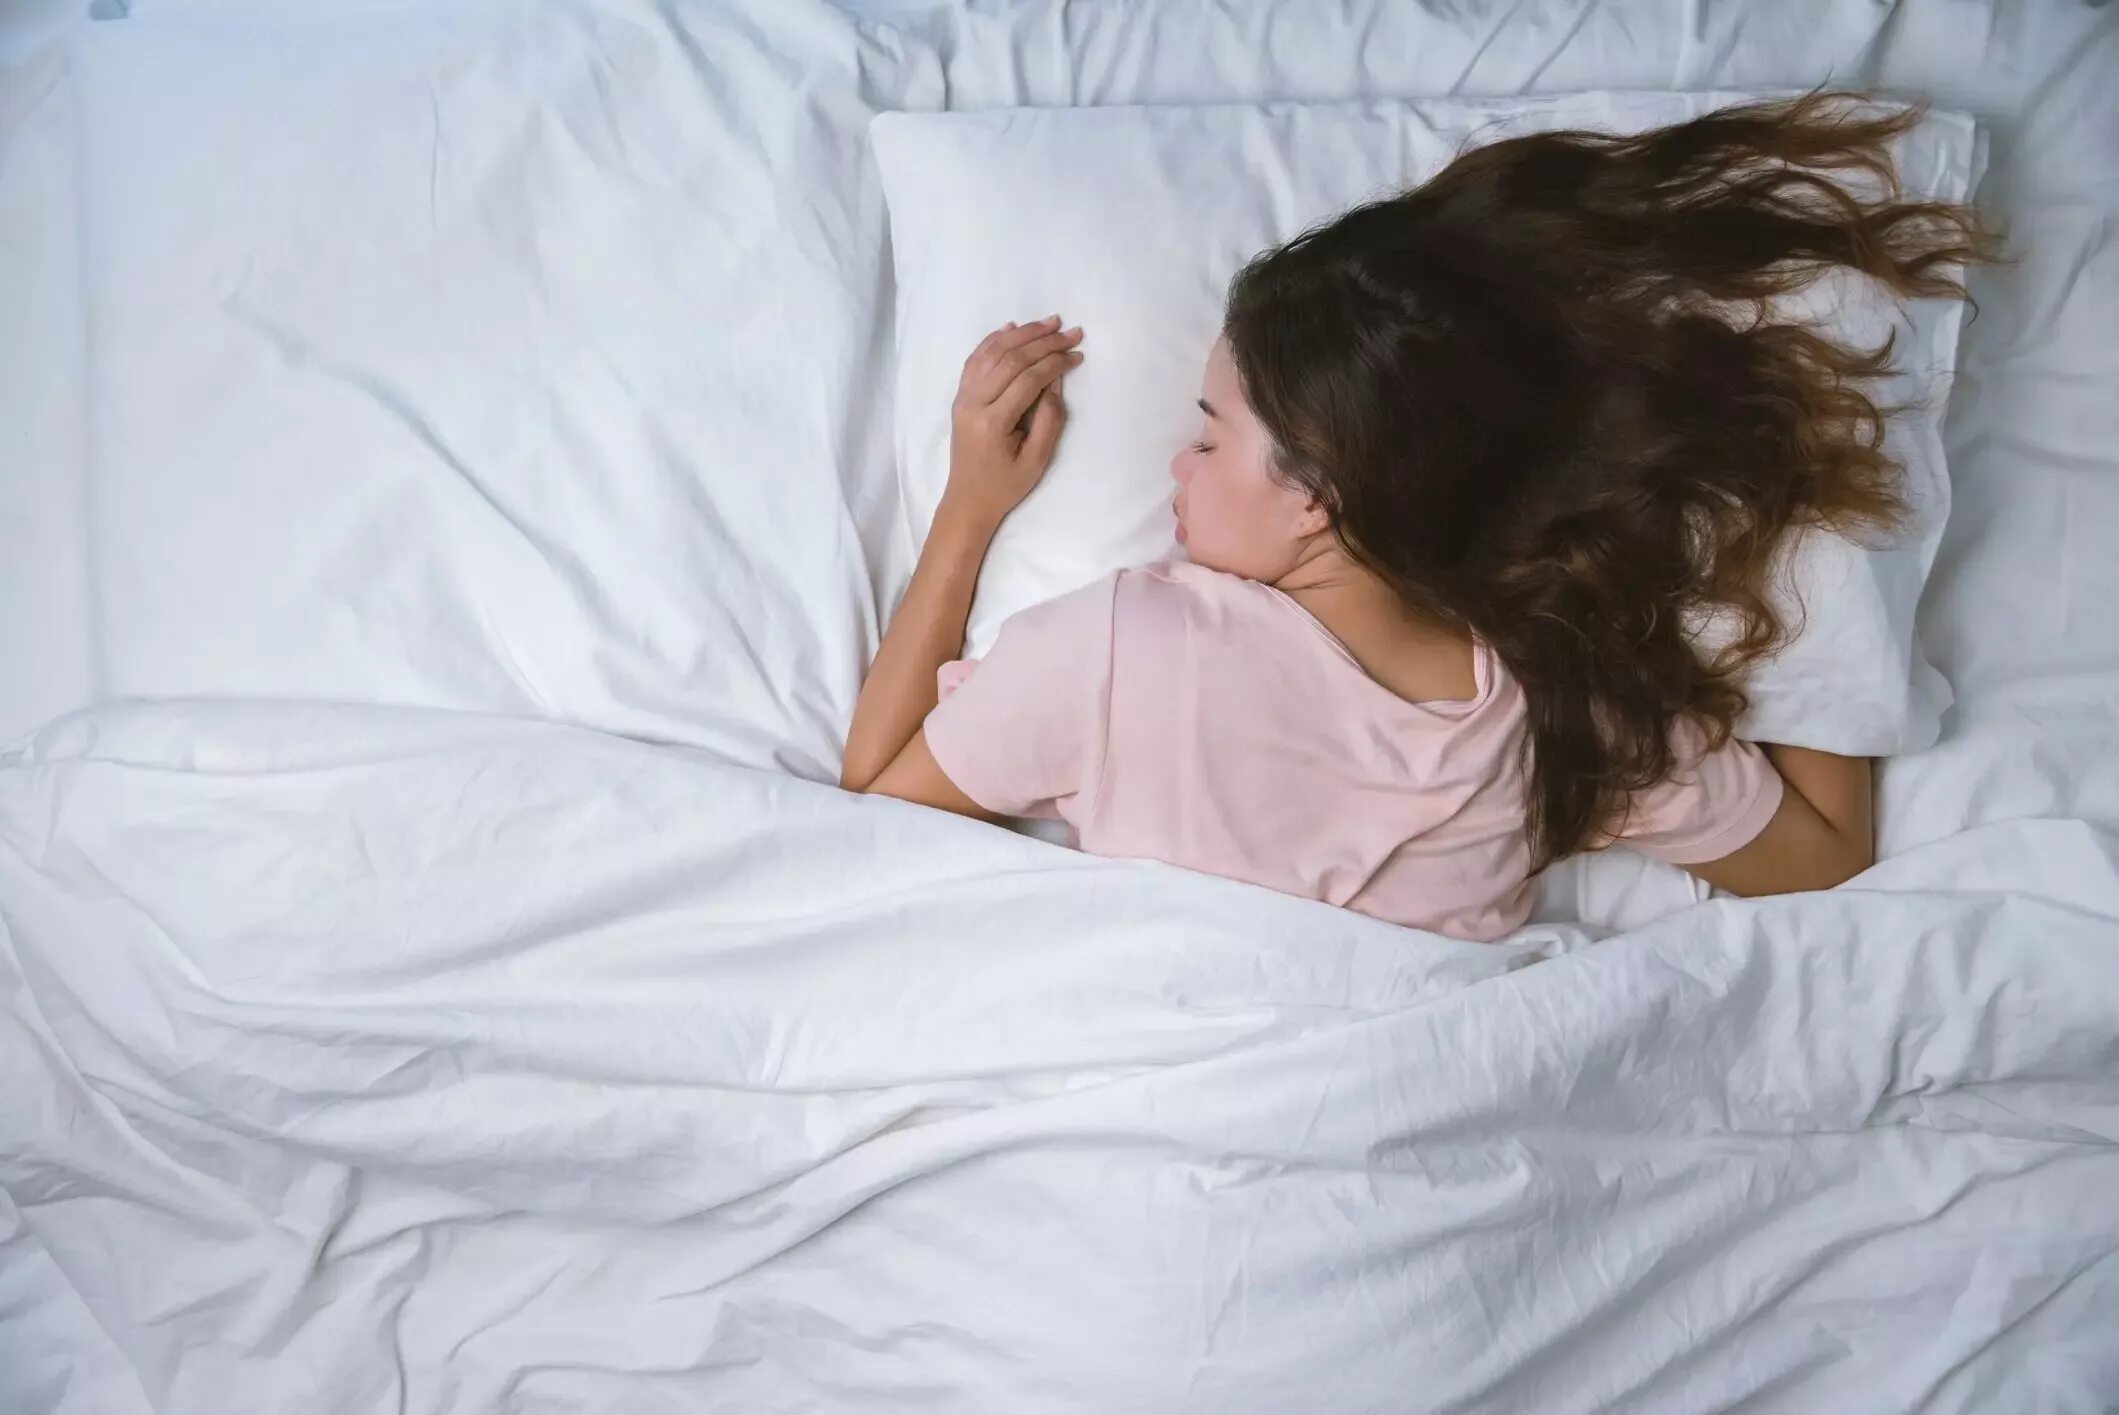 Спящие длинные волосы. Девушка подросток в пижаме на кровати. Спящий подросток девочка.